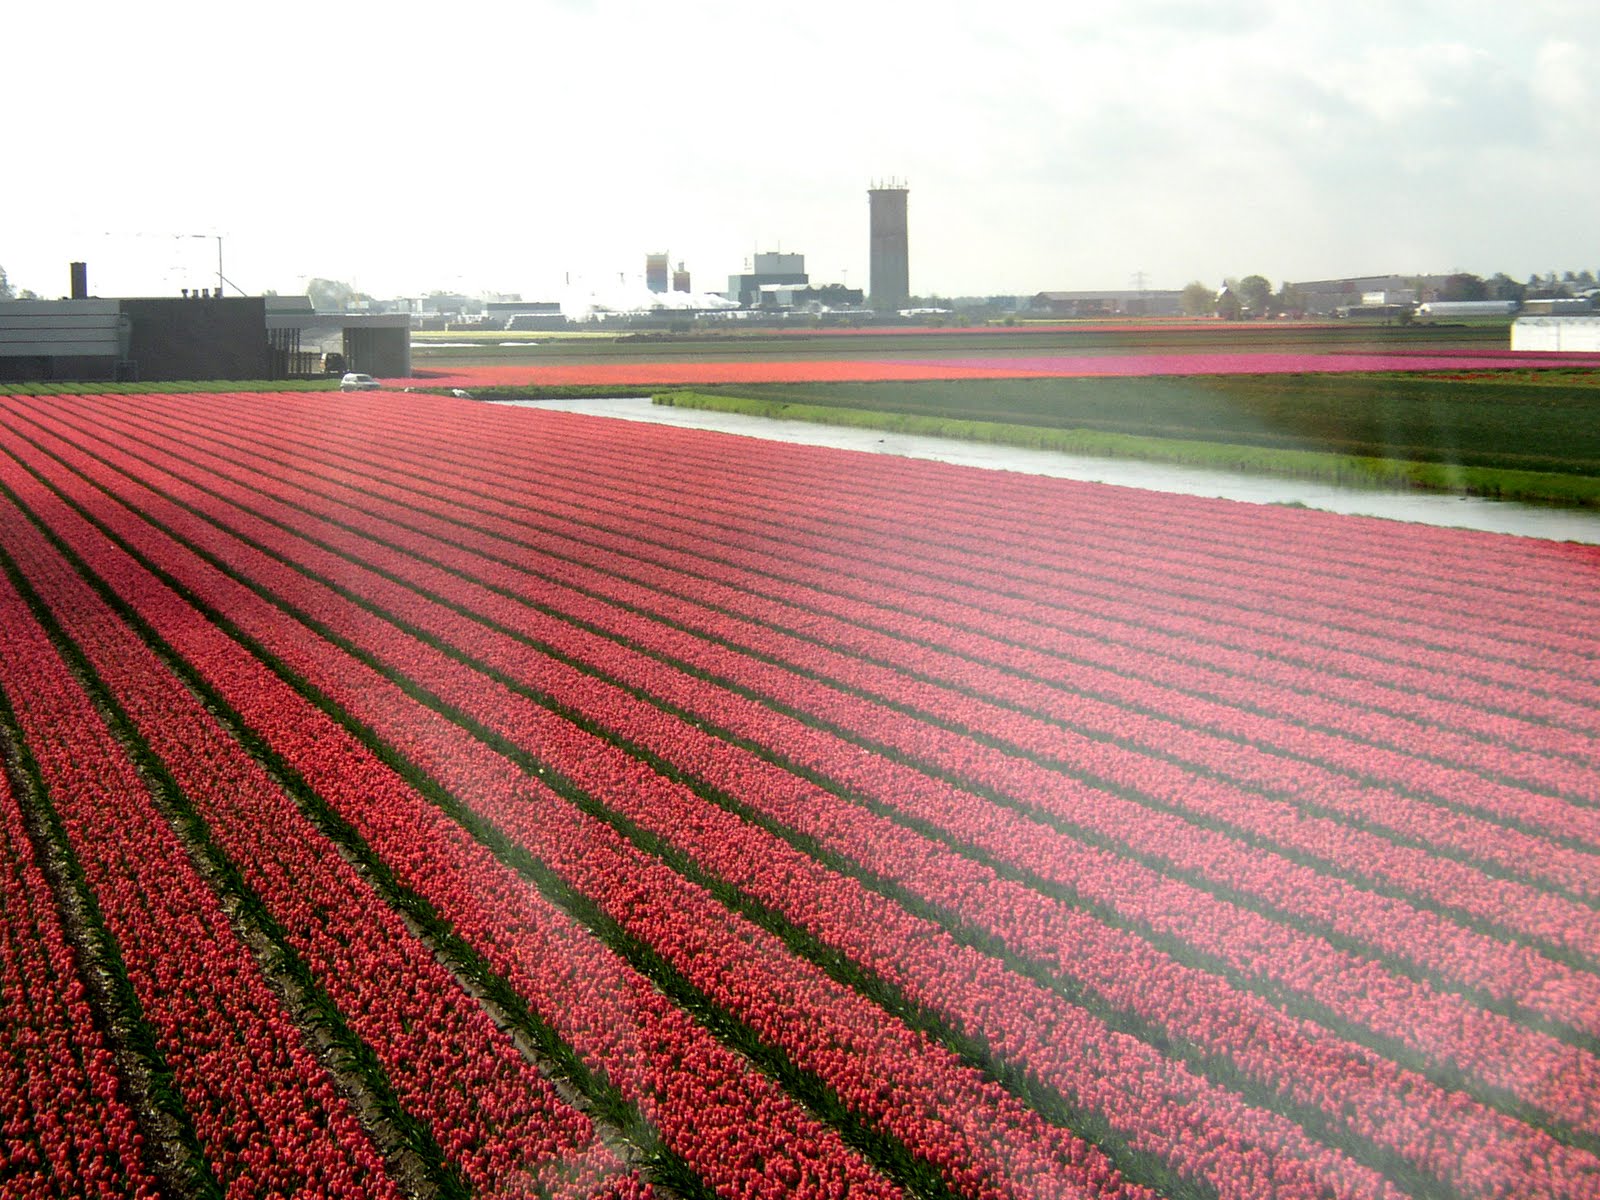 Mapa - Los Campos de Tulipanes de Holanda [Dutch tulip fields